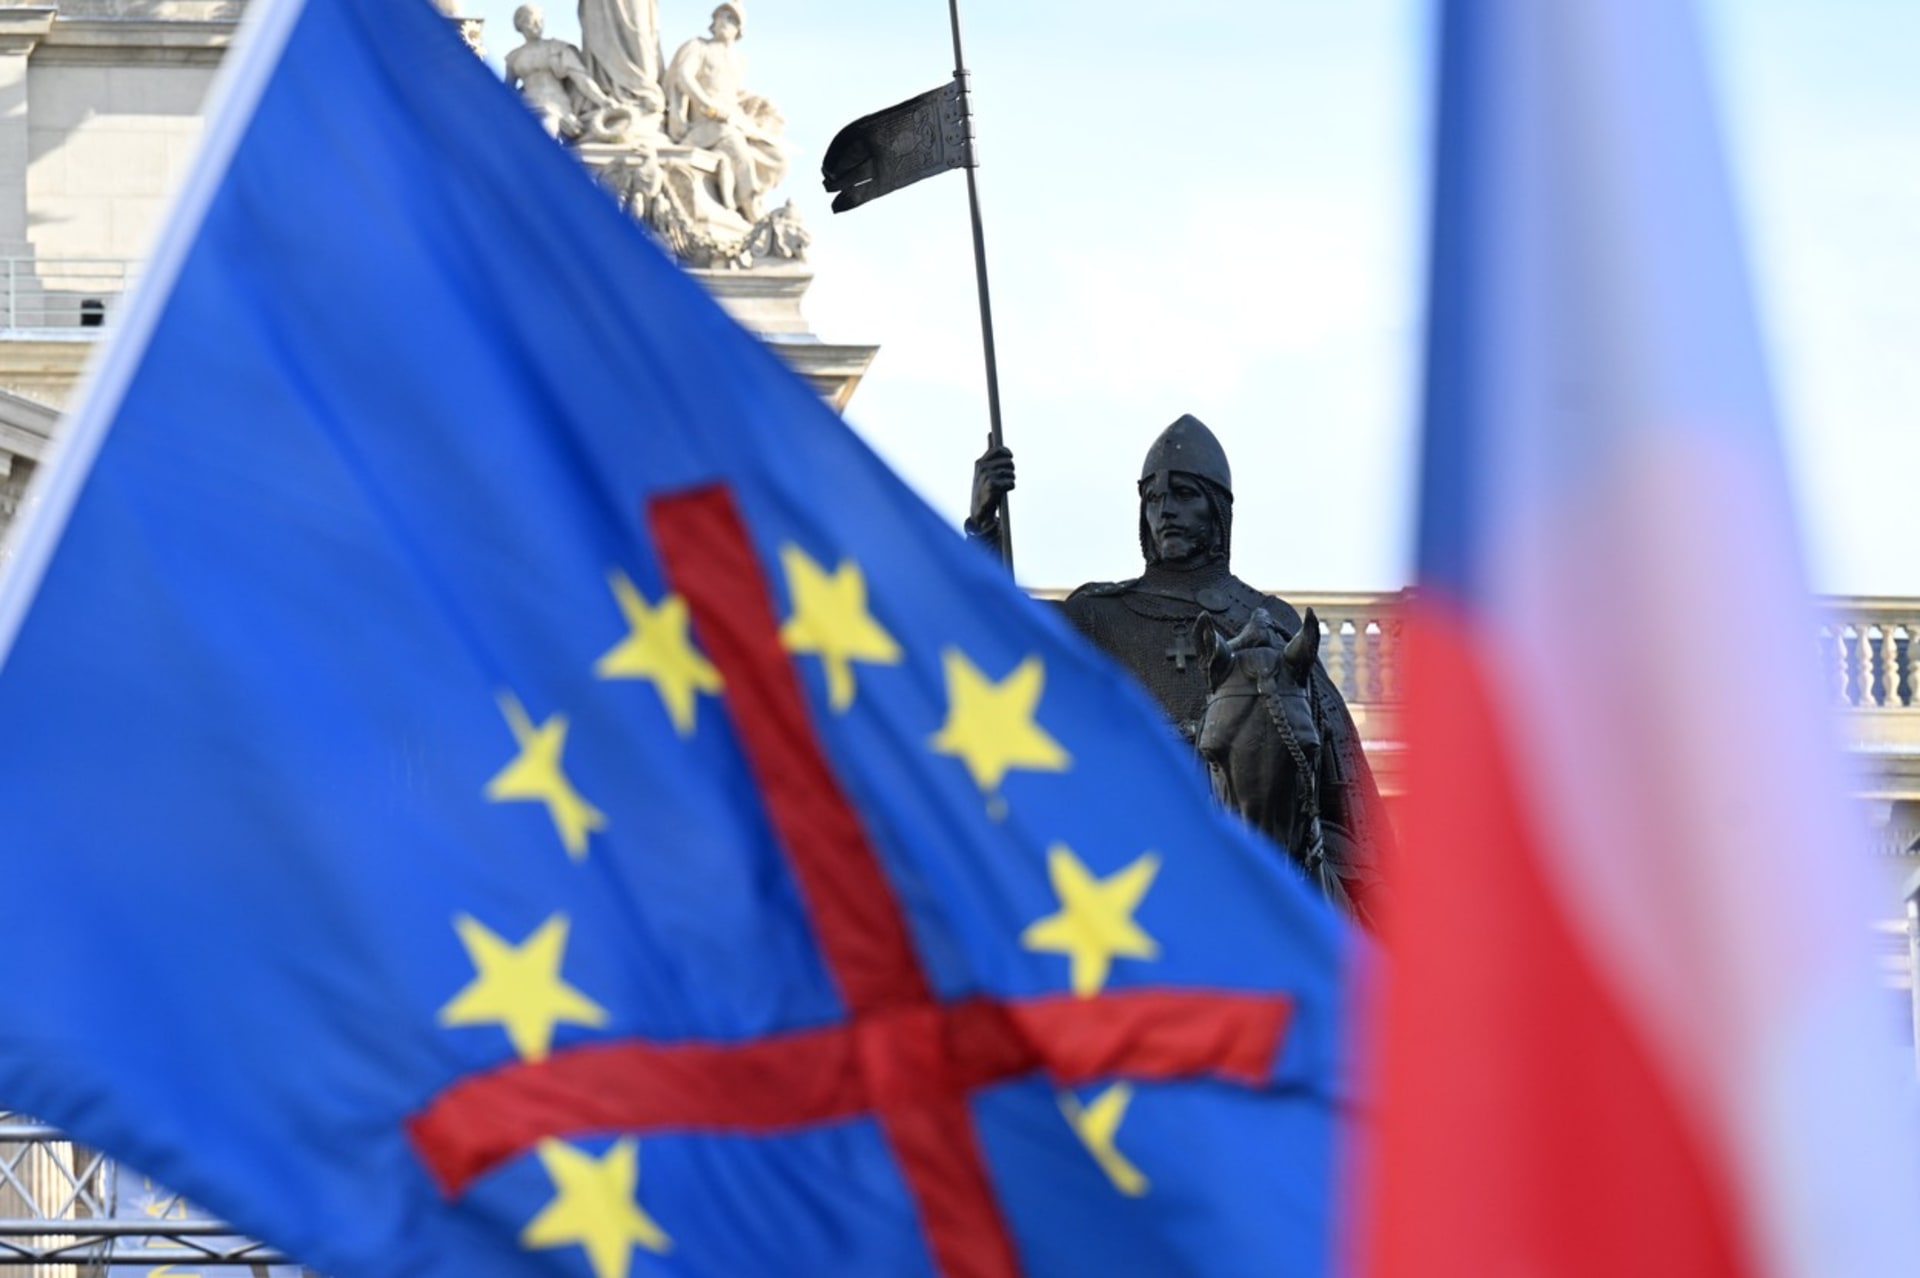 Lidé si přinesli české vlajky, ty Evropské unie měli přeškrtané.